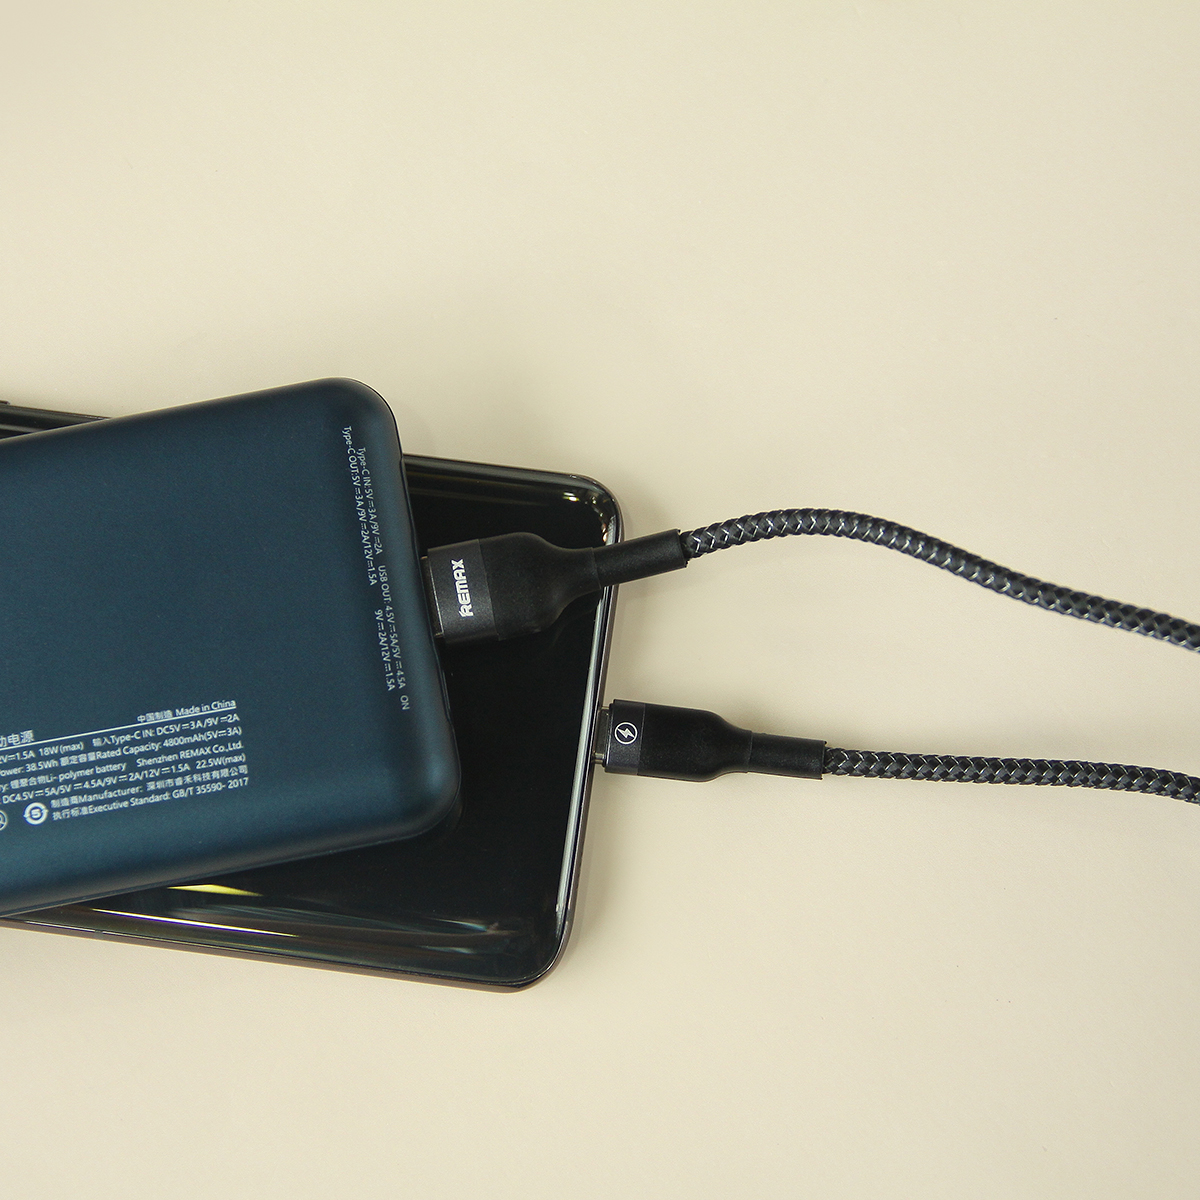 Cáp Sạc Nhanh Micro USB Remax RC-124m Dòng Sạc Tối Đa 2.4A Truyền Dữ Liệu Dài 1M Hàng Chính Hãng Remax